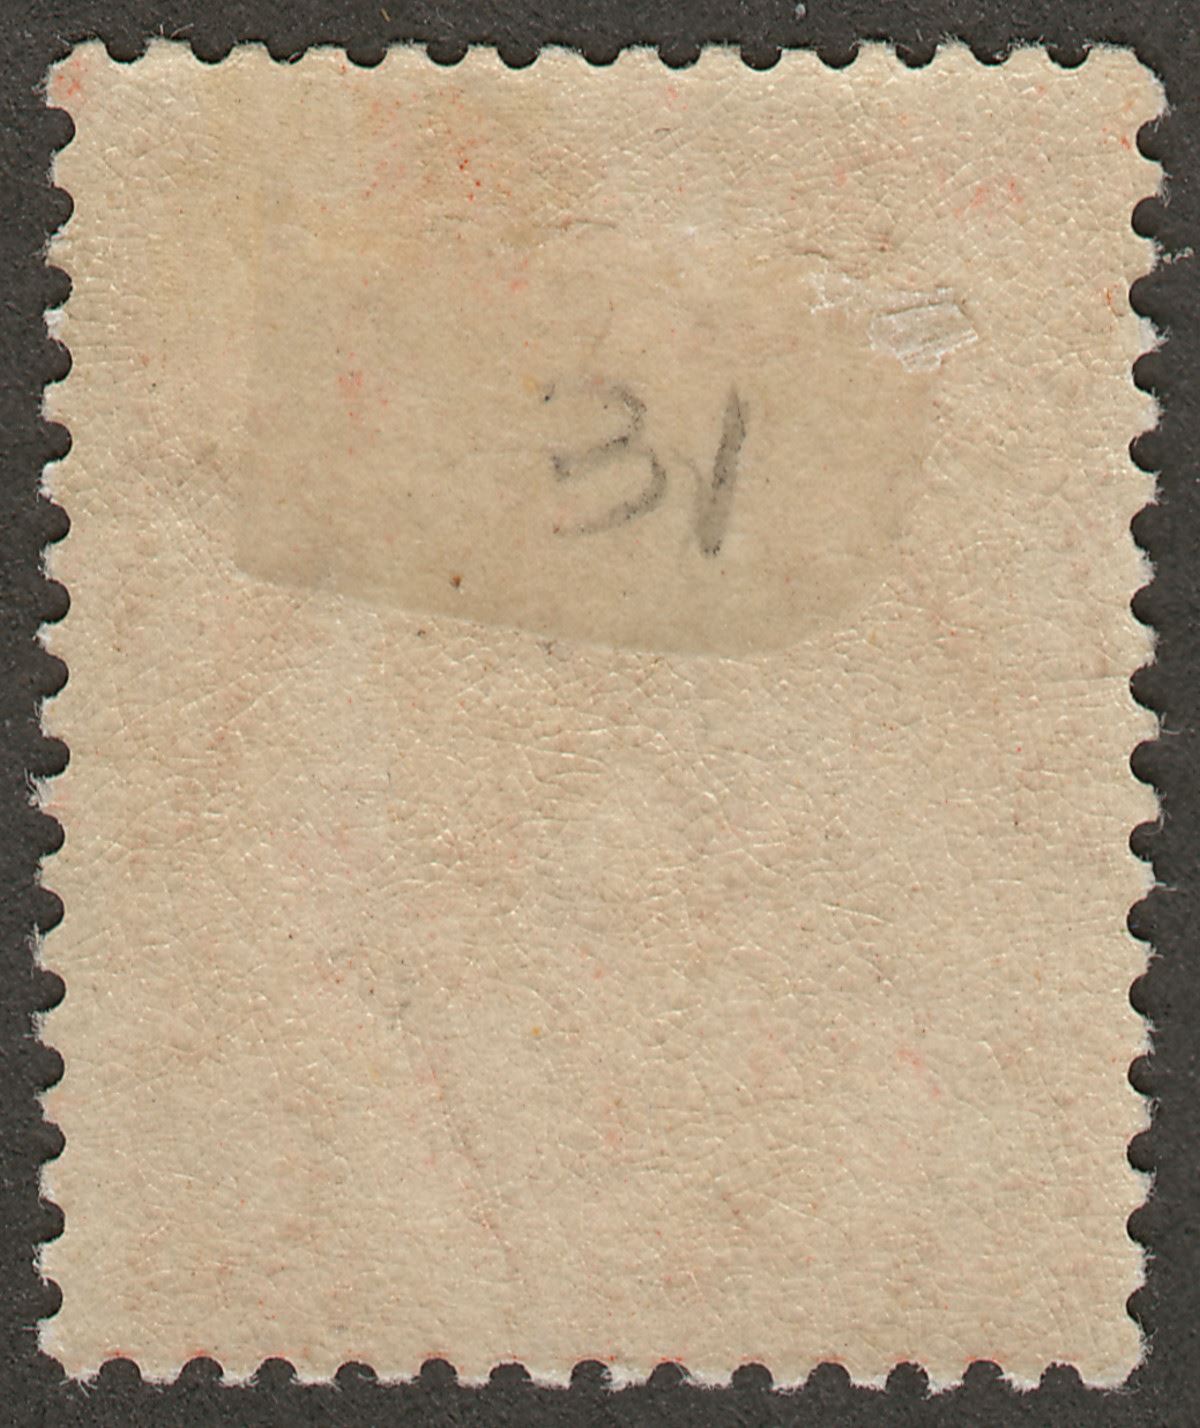 Falkland Islands 1920 KGV 1d Orange-Vermilion Mint SG61d